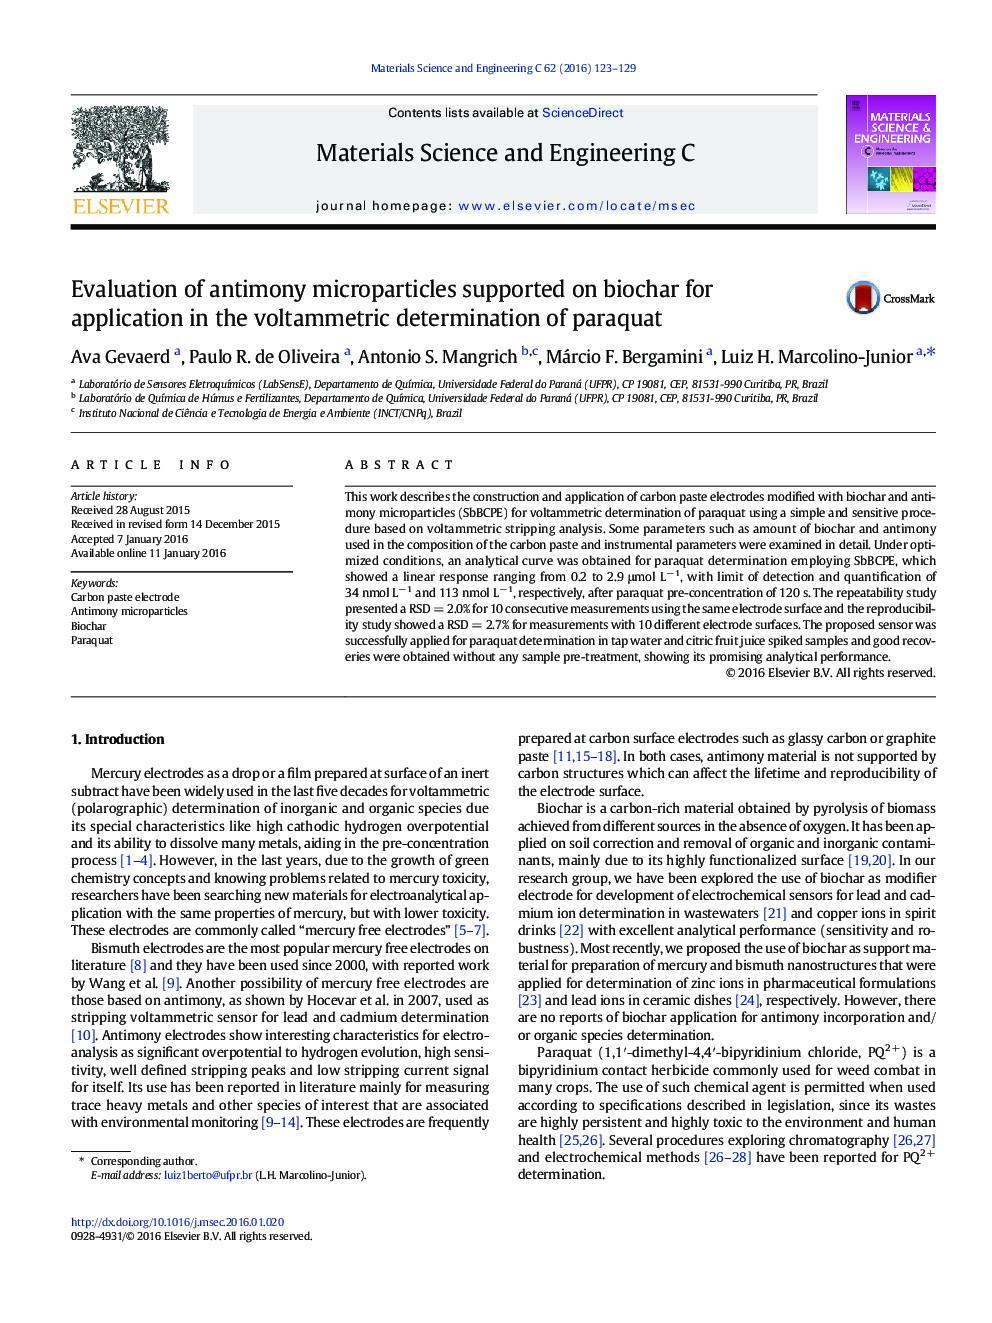 ارزیابی میکروارگانیسم های آنتیموان بر روی زیست سنج برای کاربرد در تعیین ولتاژ پاراکوات 